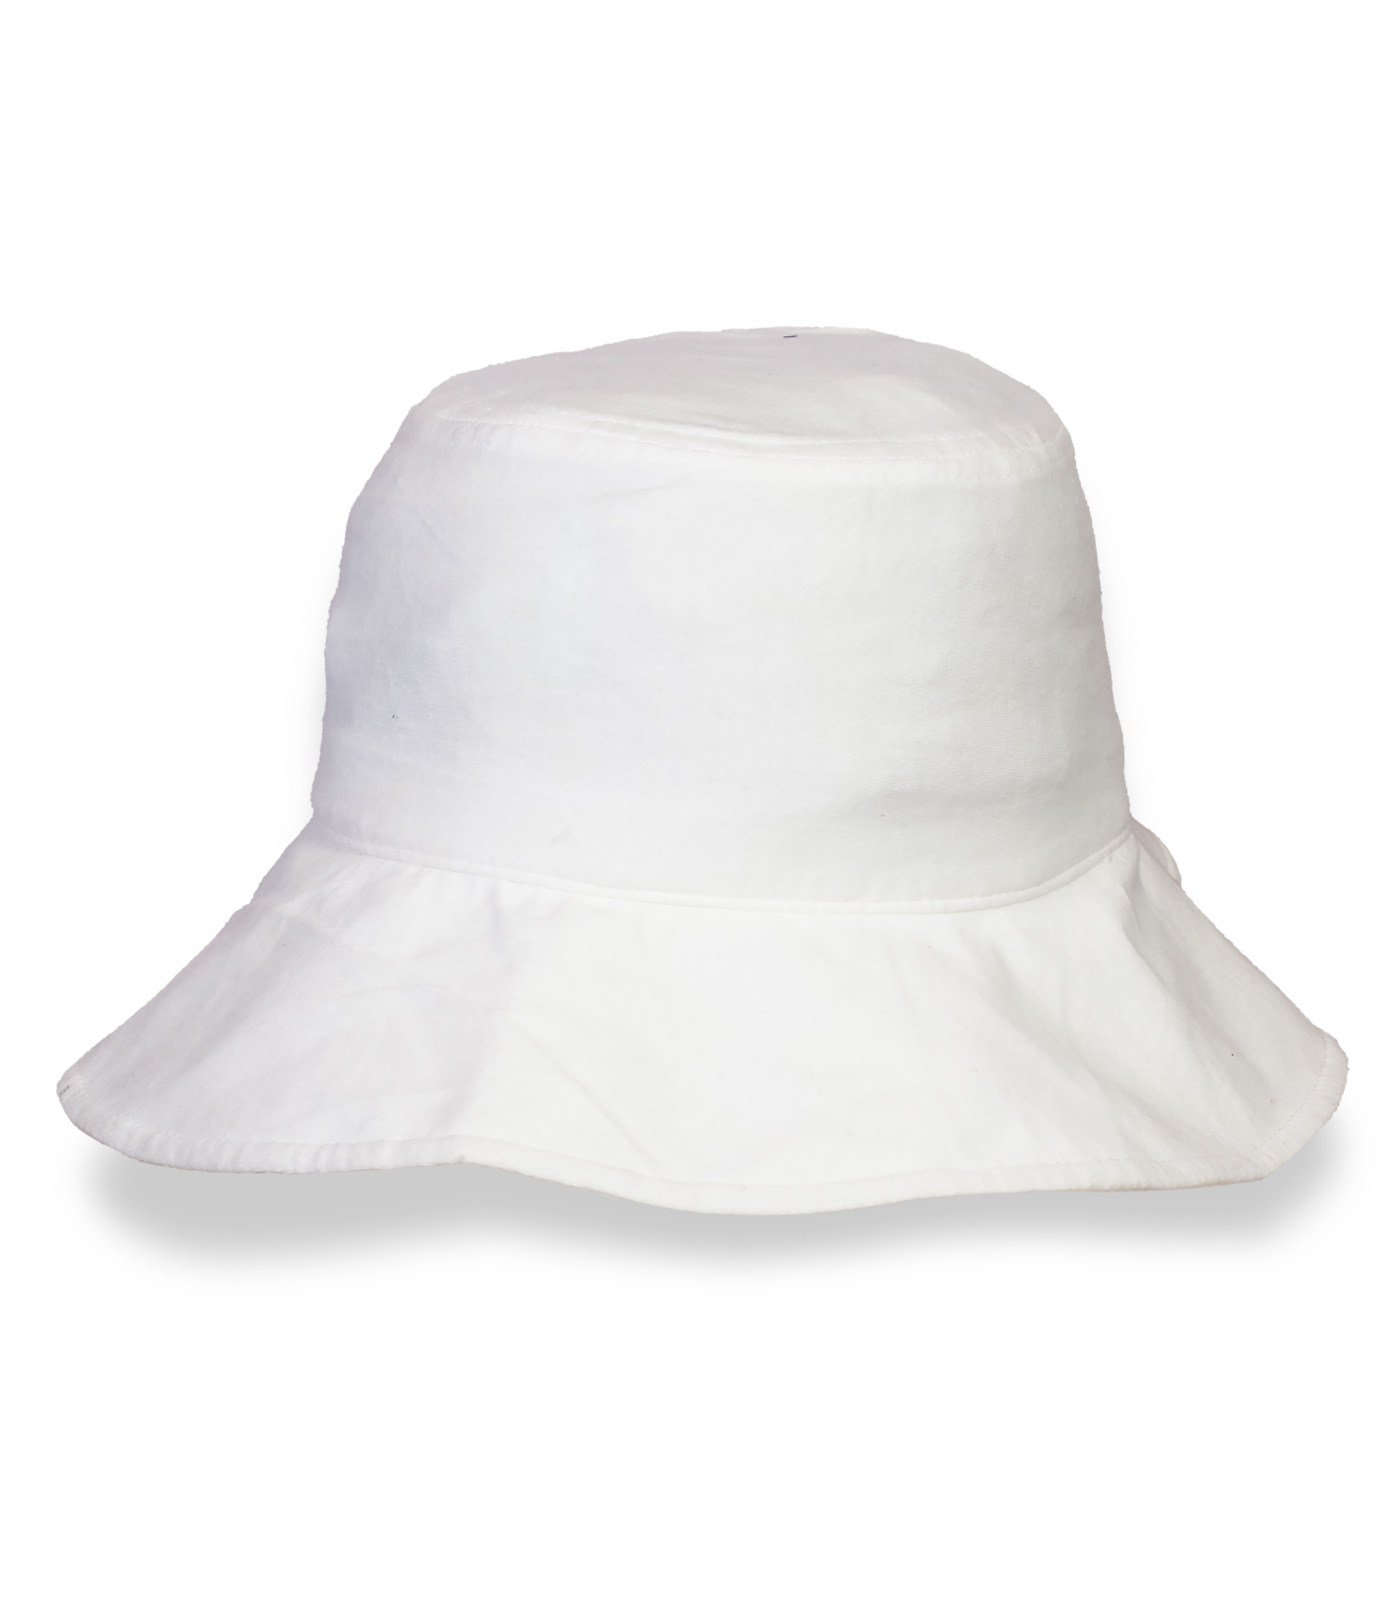 Купить воздухопроницаемую белую шляпу по выгодной цене